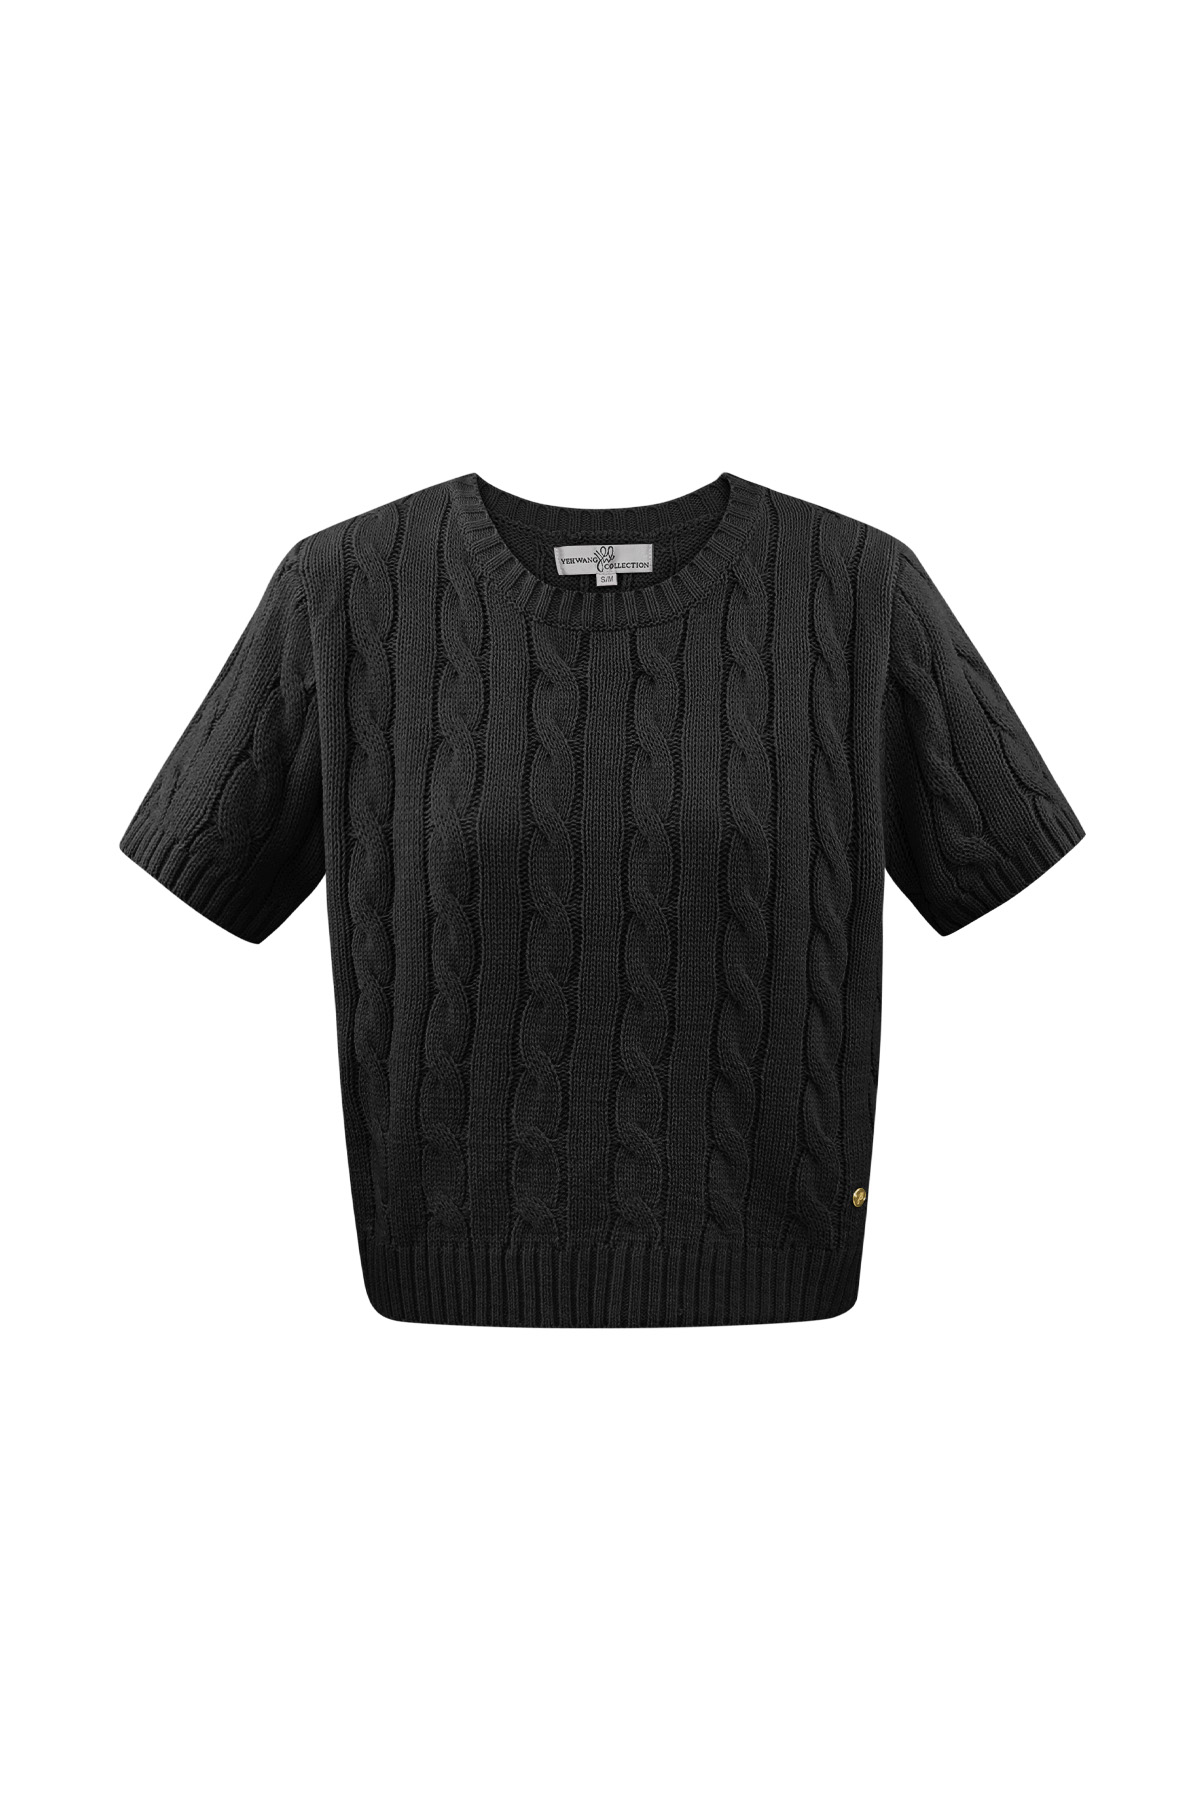 Classico maglione lavorato a trecce con maniche corte large/extra large – nero 